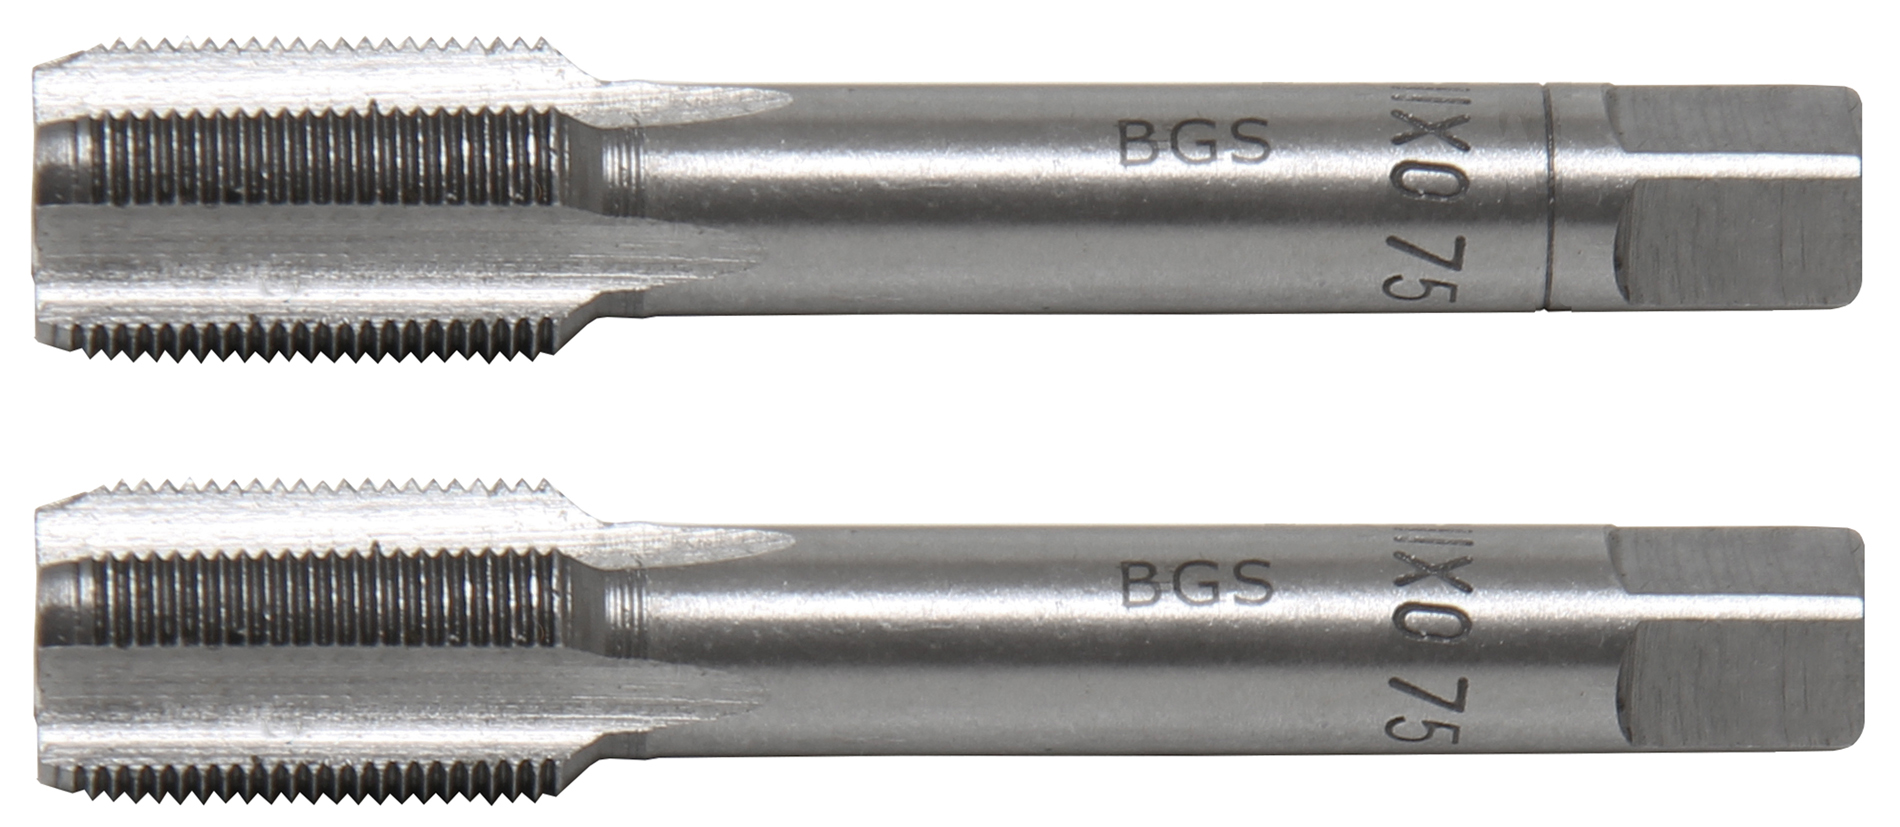 BGS Závitníky sada, předřezávací a dokončovací závitník, M11 x 0.75, 2 pcs.